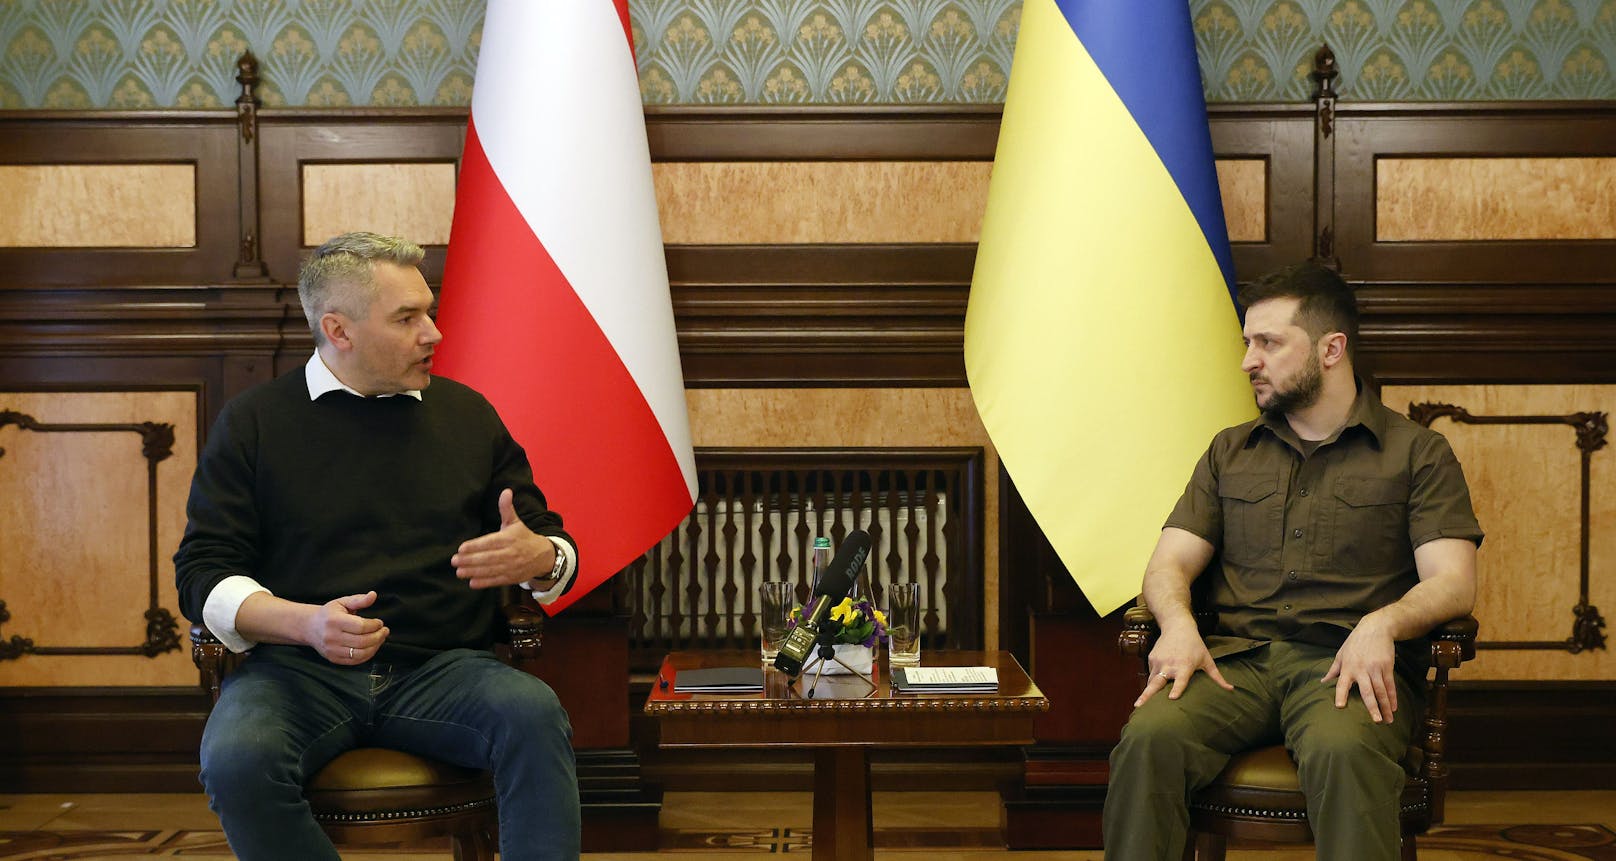 Bundeskanzler Karl Nehammer ist am Samstag zu einem "Solidaritätsbesuch" in der Ukraine eingetroffen.